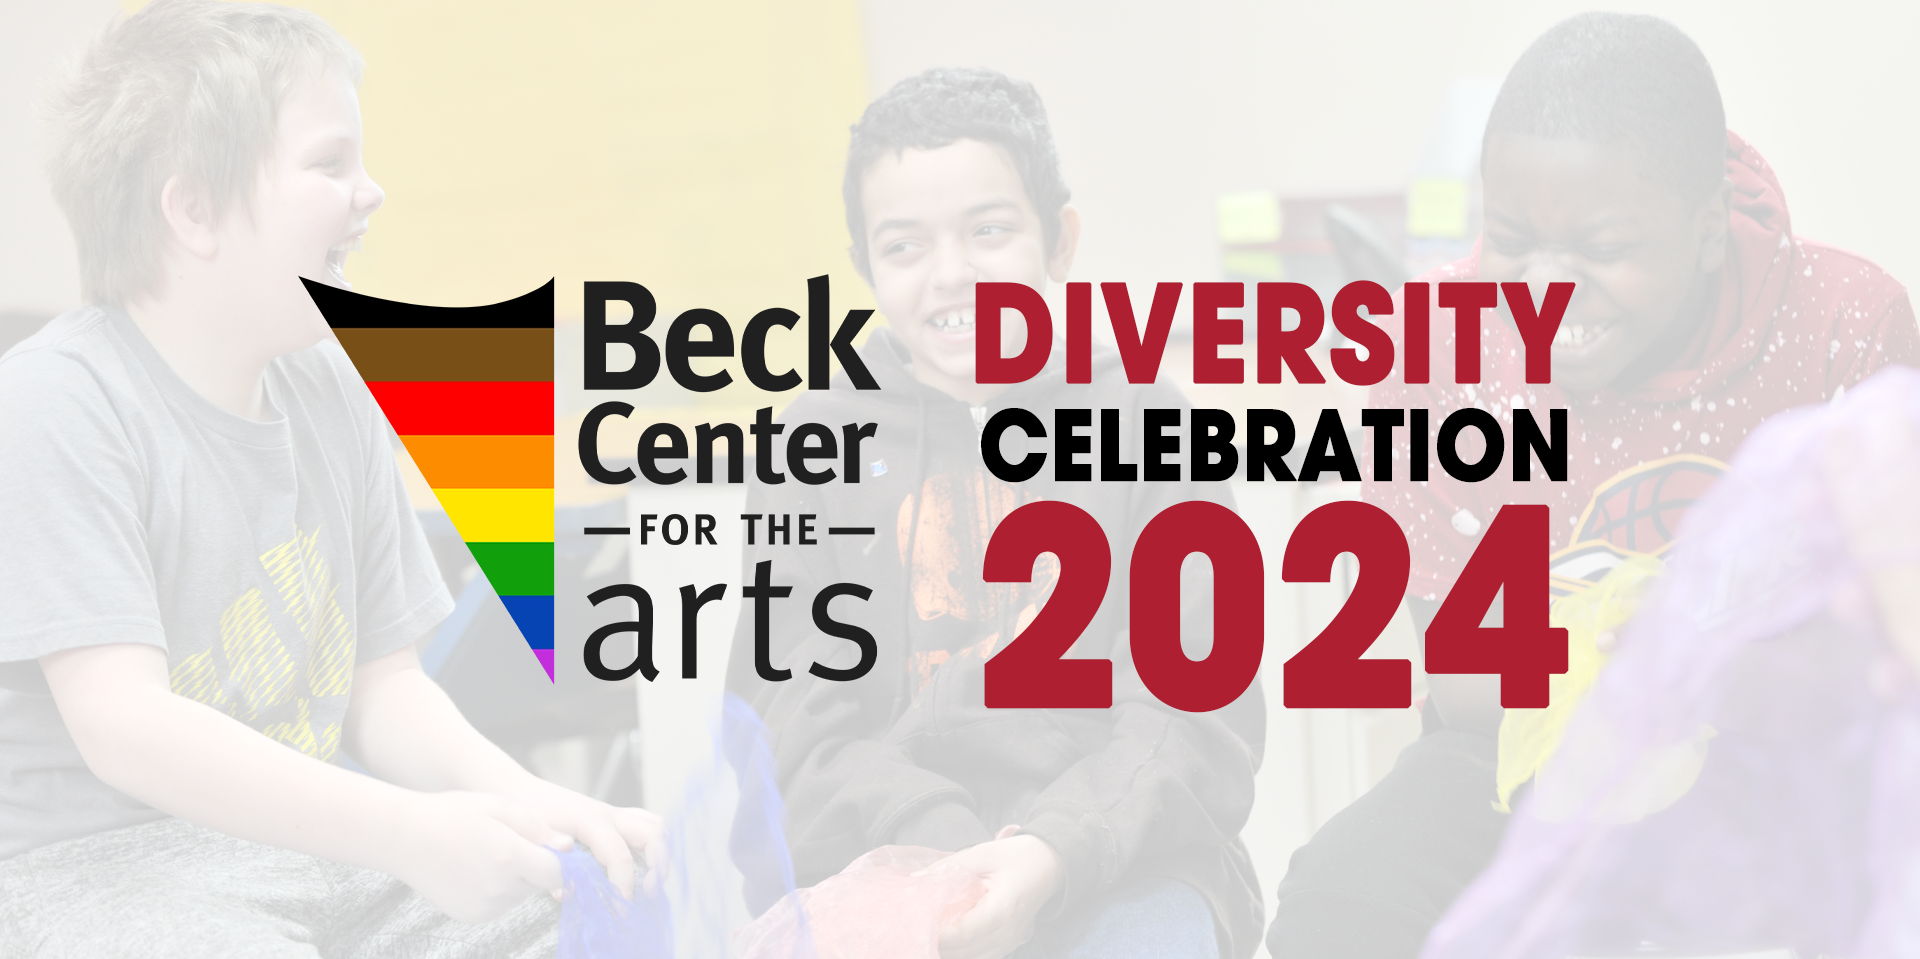 Diversity Celebration 2024 promotional image